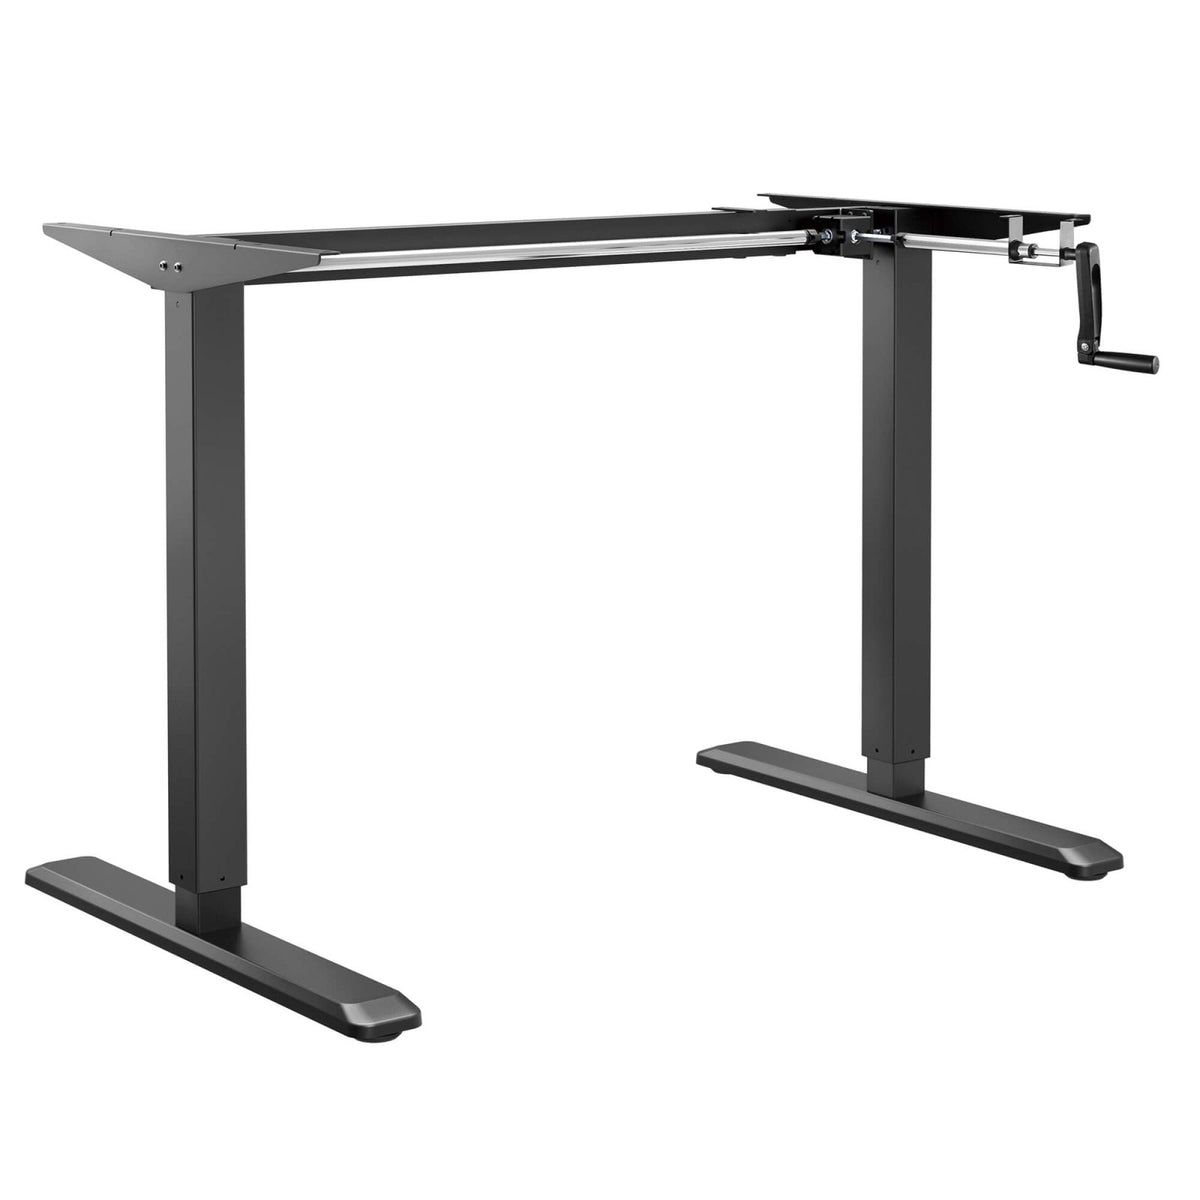 StandXT B02-22 Eco manuell höhenverstellbarer Schreibtisch - mit Handkurbel - StandXT - Höhenverstellbare Tische